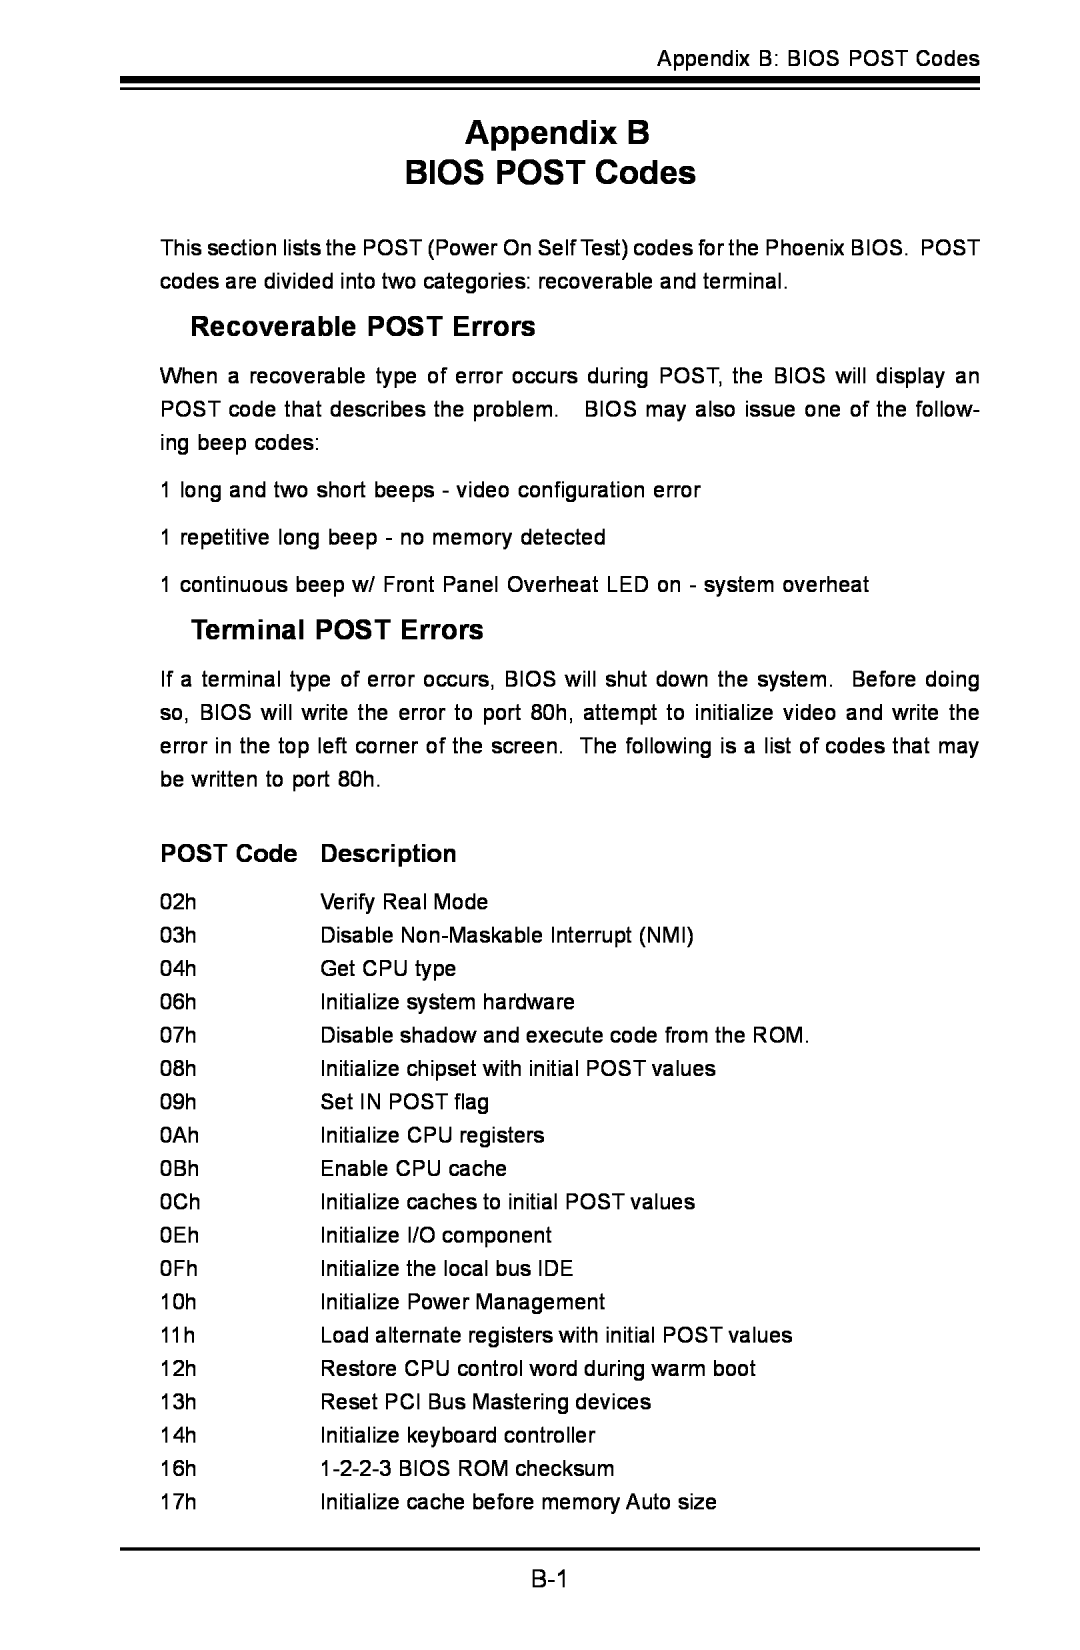 SUPER MICRO Computer C2SBA+II Appendix B BIOS POST Codes, Recoverable POST Errors, Terminal POST Errors, Description 